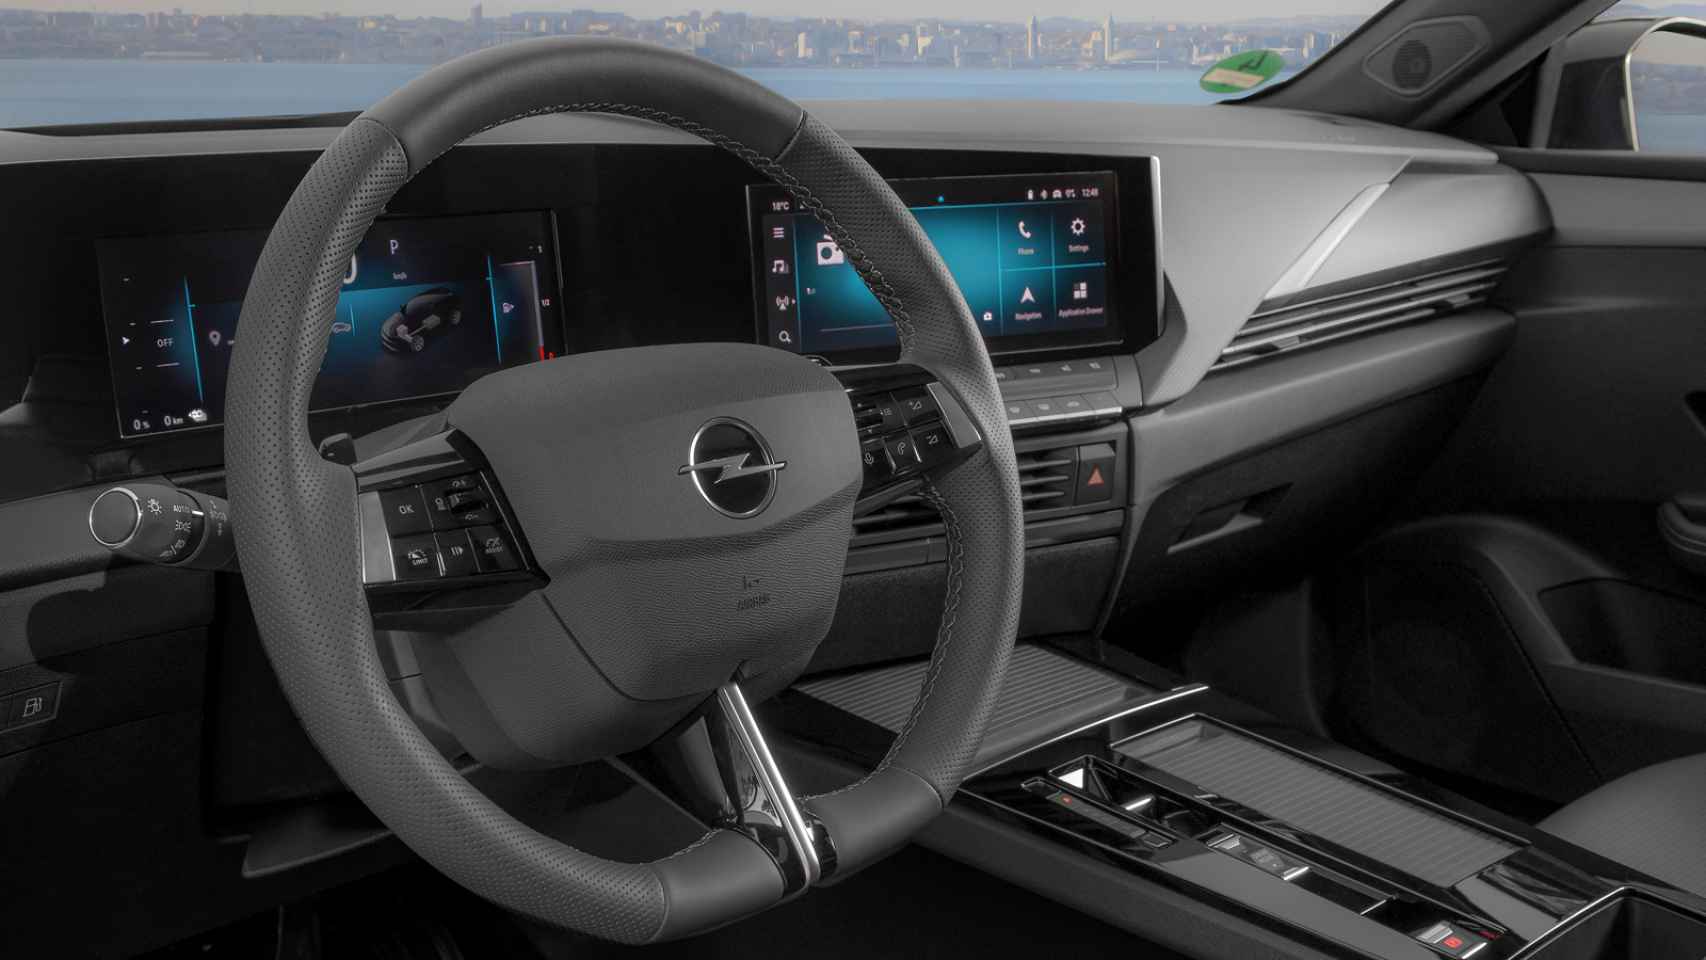 El interior del Opel Astra destaca por su digitalización.